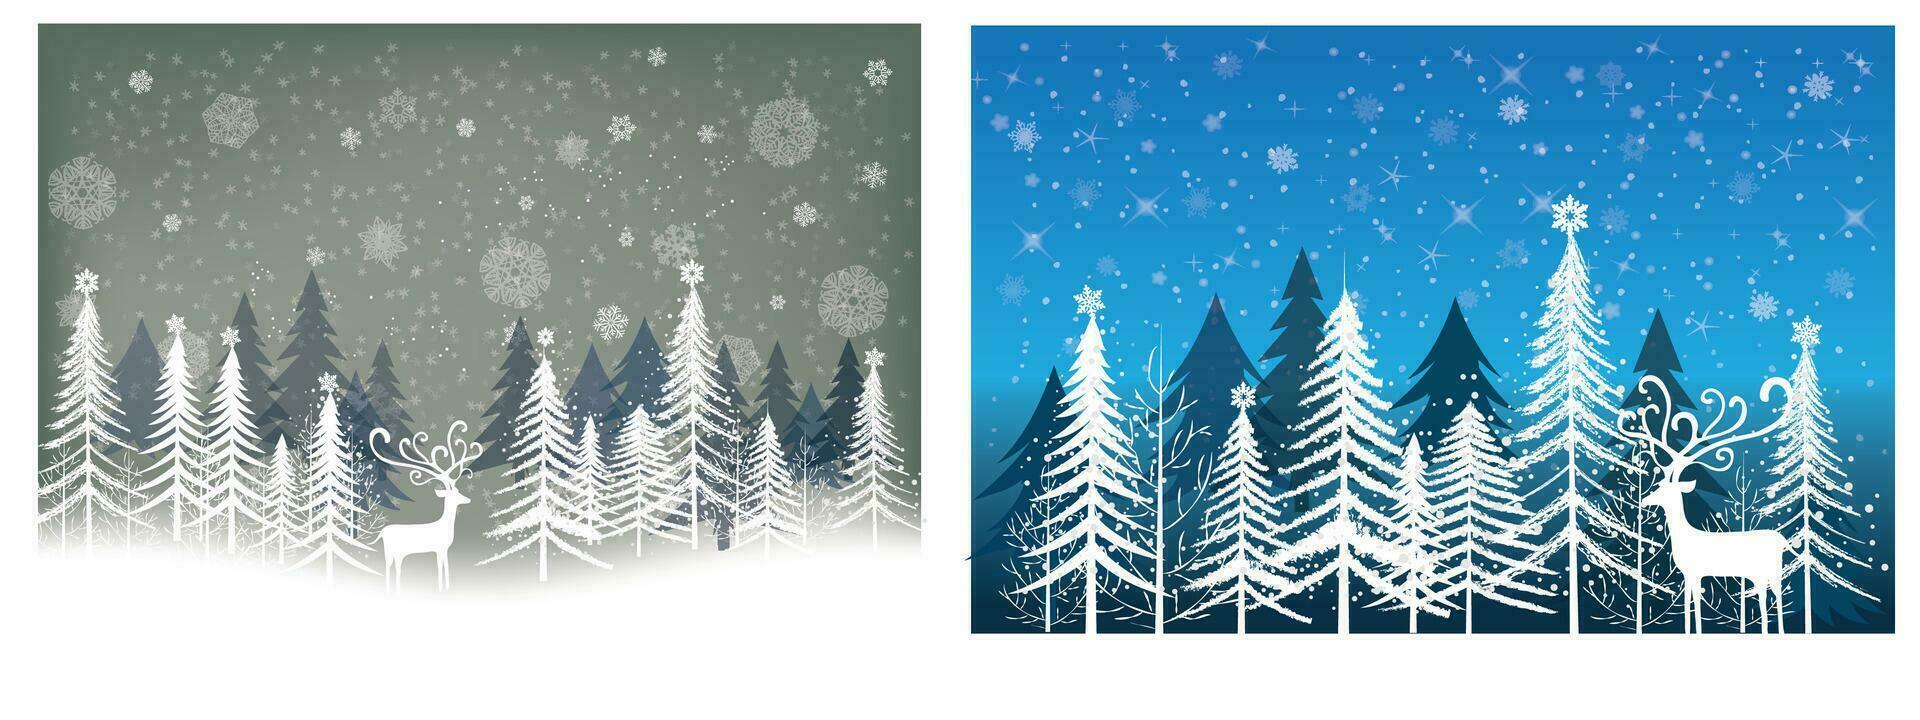 vinter- försäljning produkt baner, tall skog landskap, snö med vit rådjur, papper illustration vektor